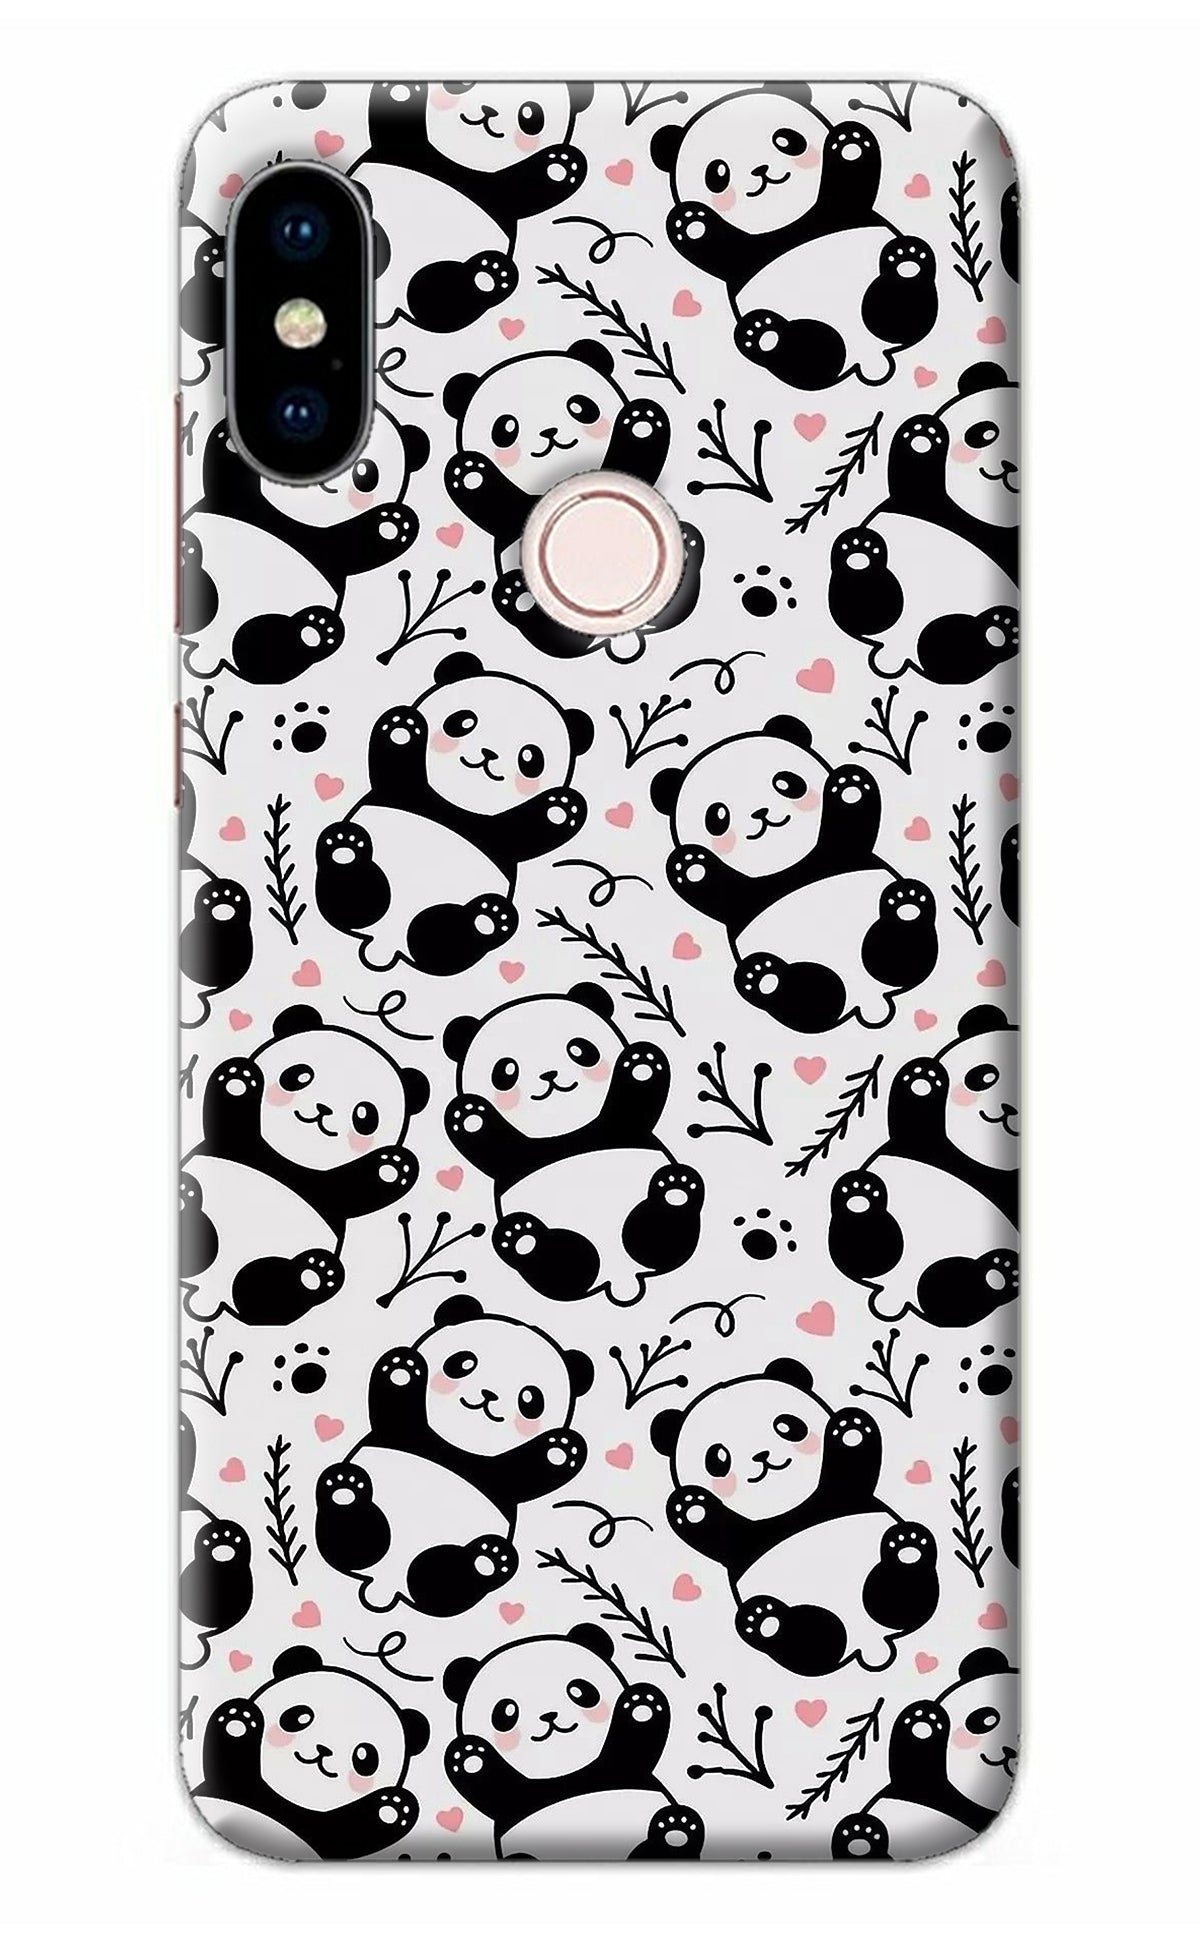 Cute Panda Redmi Note 5 Pro Back Cover